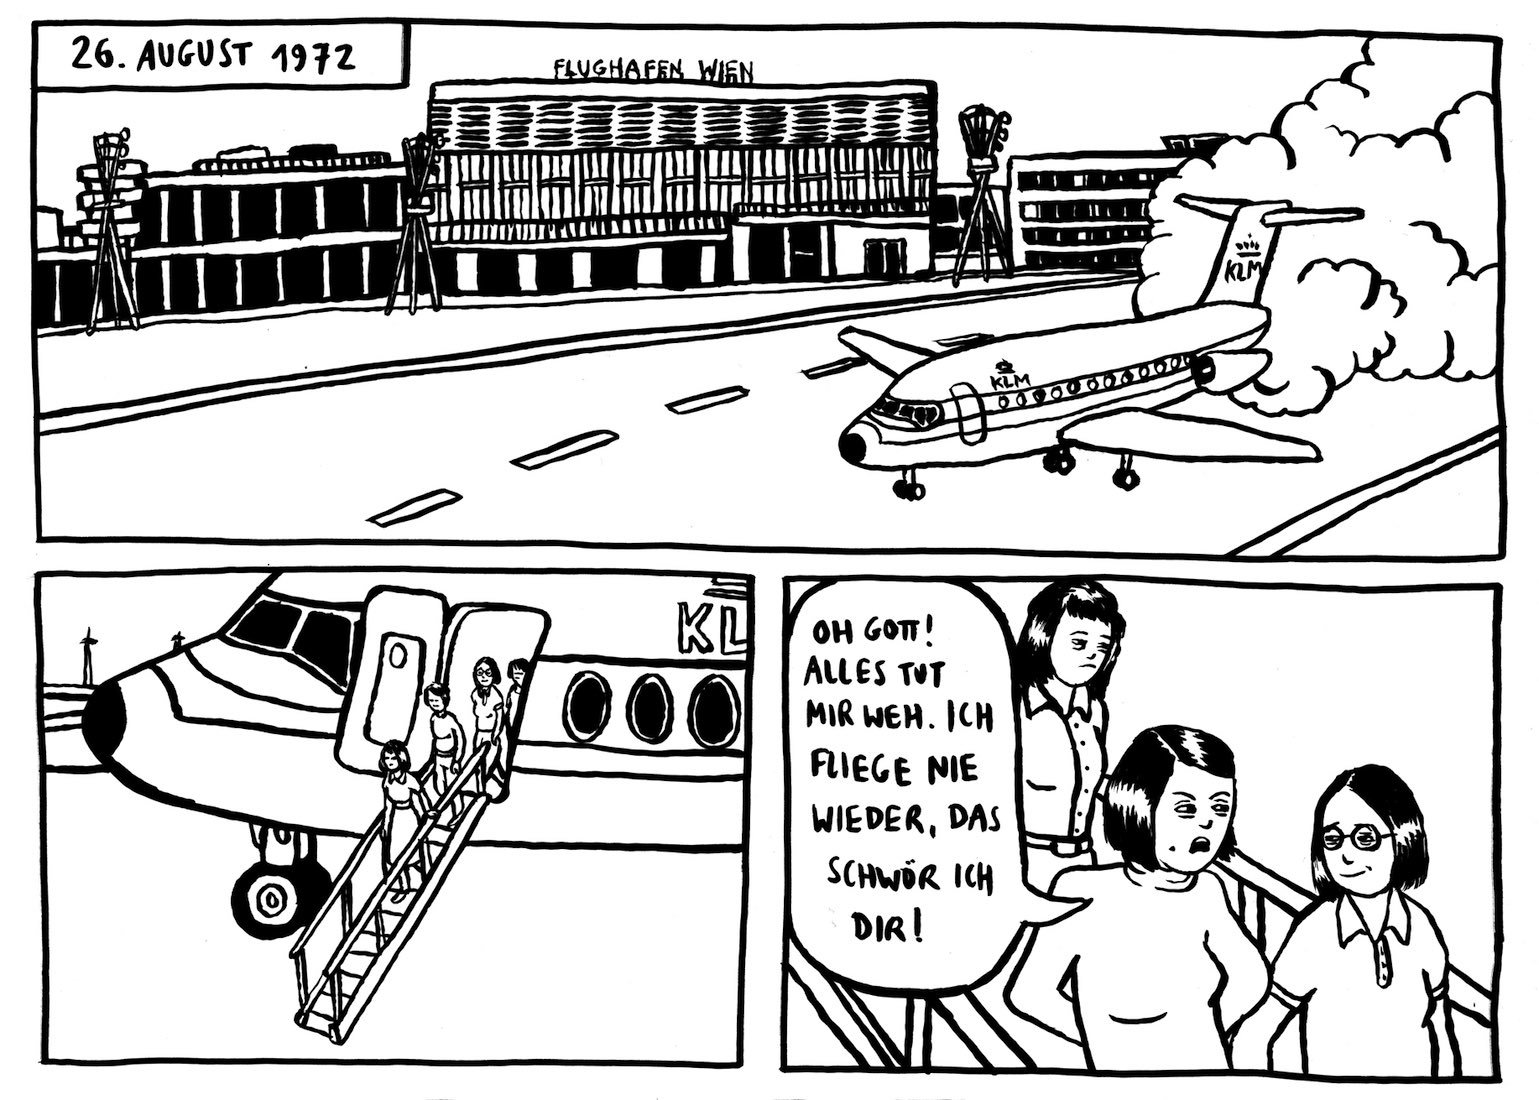 3 Panels aus einem Comic in schwarz-weiß. Gezeichnet ist eine Flugzeuglandung am Wiener Flughafen von 26.8.1972. Mehrere Frauen steigen aus. Eine sagt: 